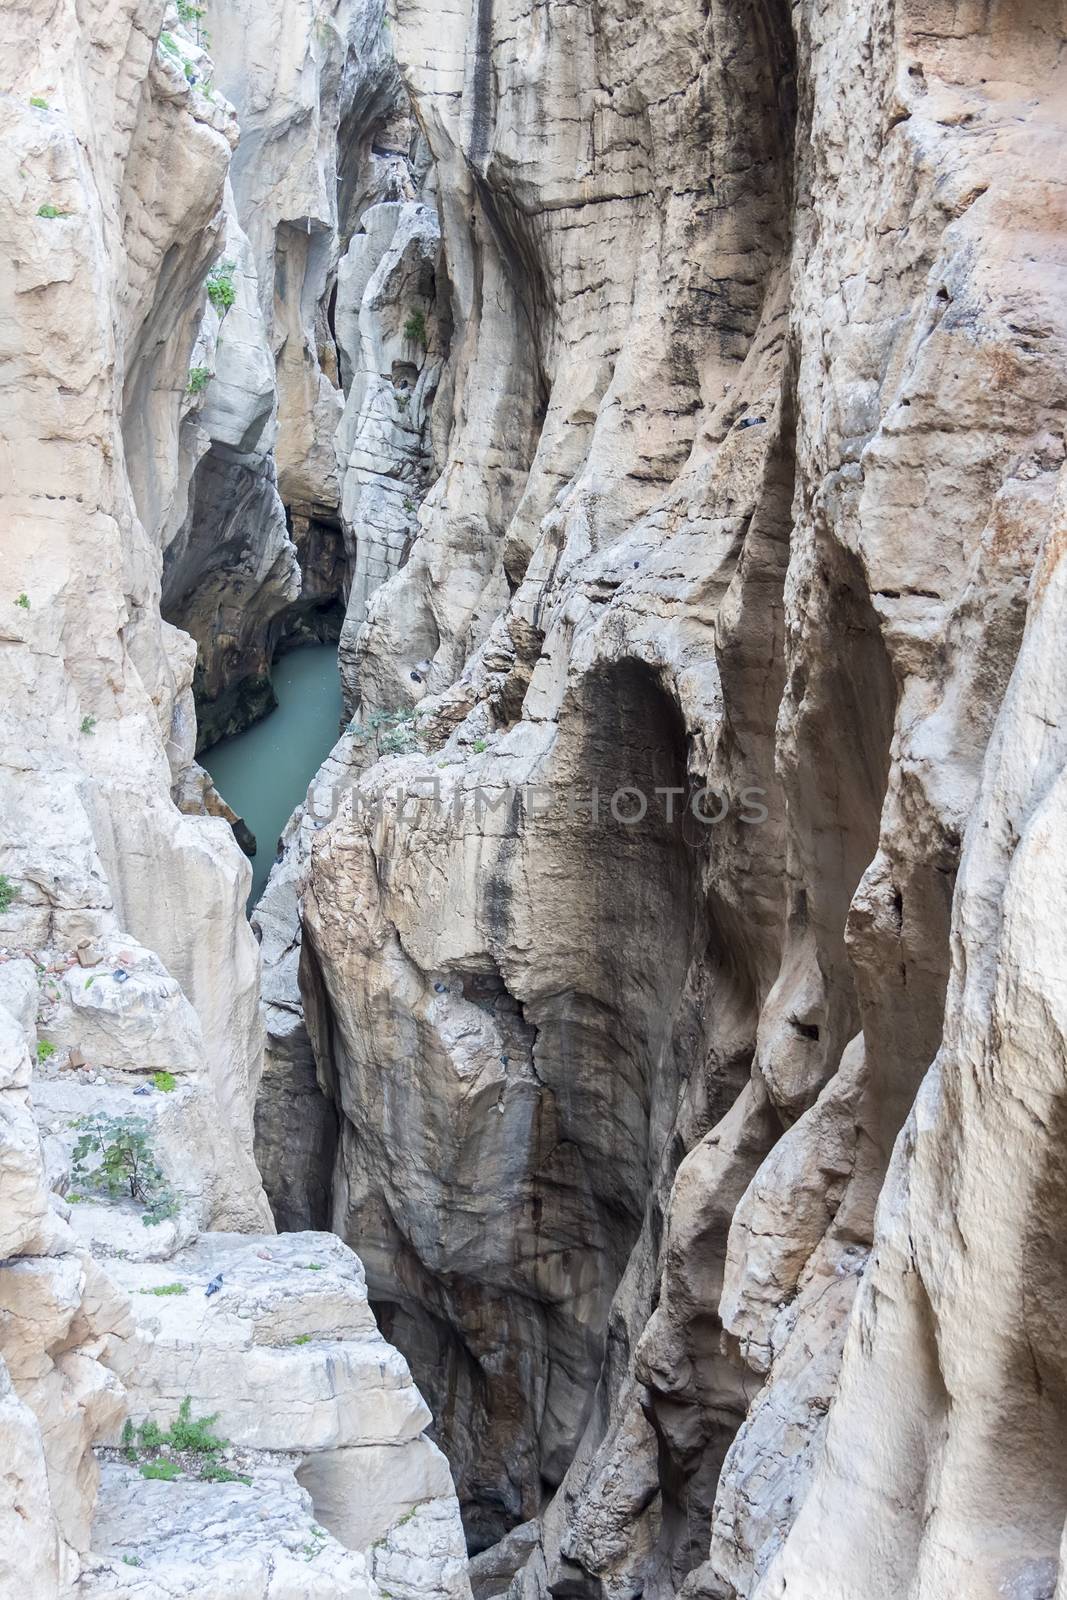 Rock formations in the river (Caminito del Rey, Málaga) by max8xam